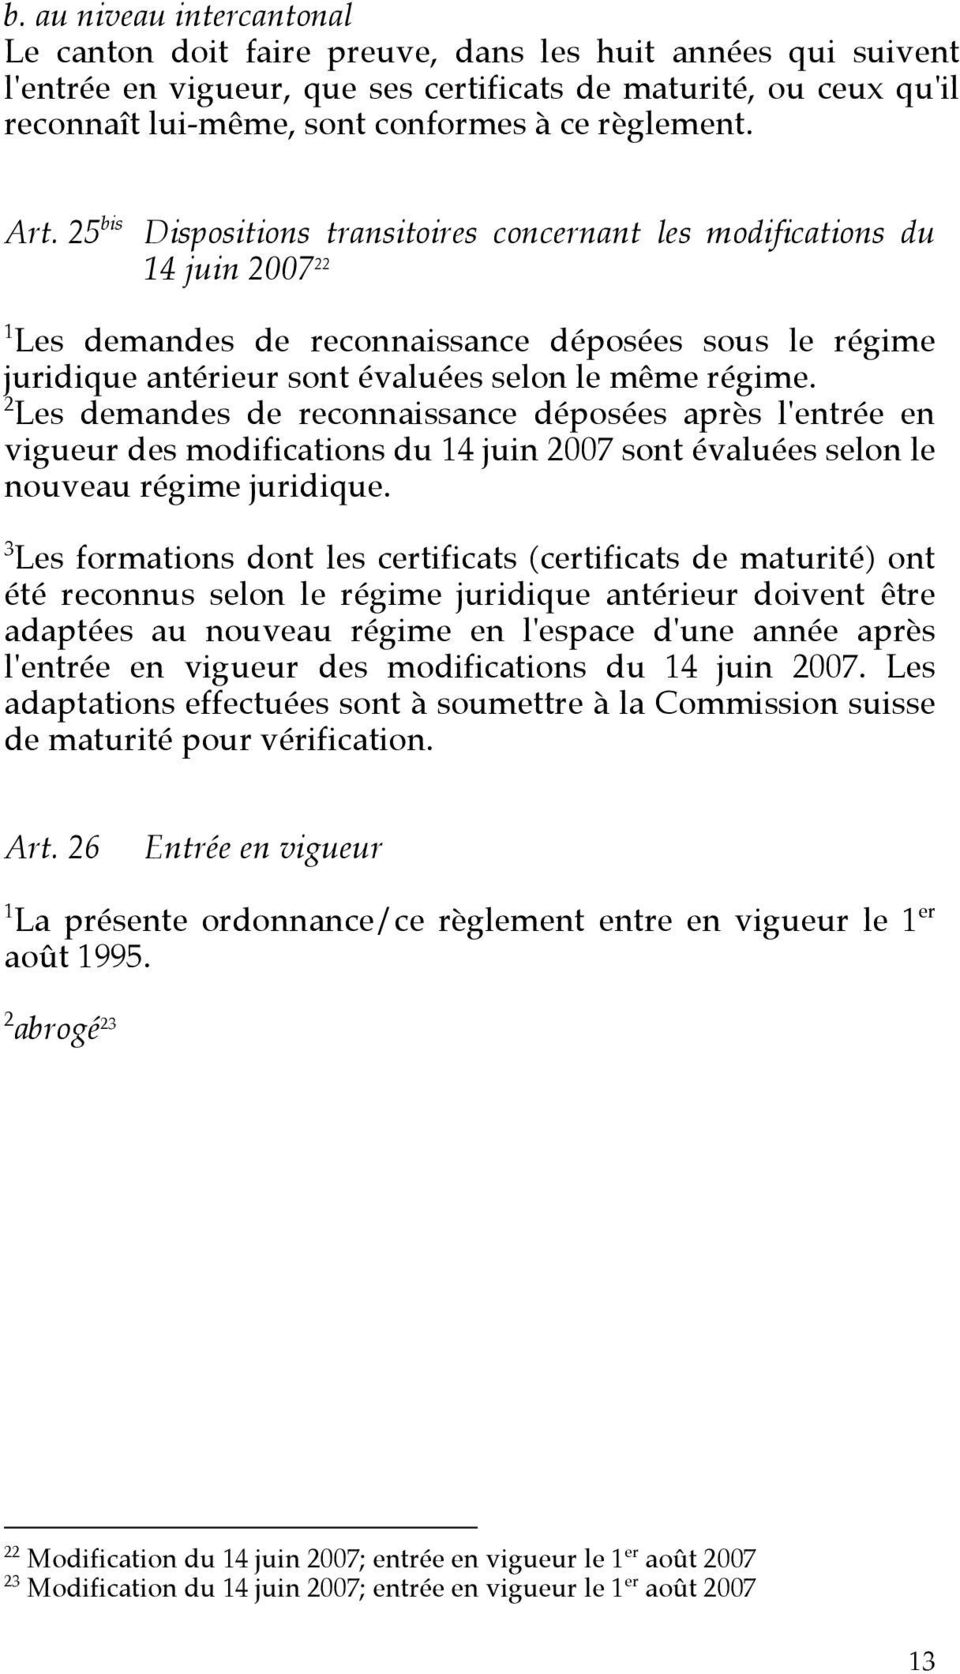 25 bis Dispositions transitoires concernant les modifications du 14 juin 2007 22 1 Les demandes de reconnaissance déposées sous le régime juridique antérieur sont évaluées selon le même régime.